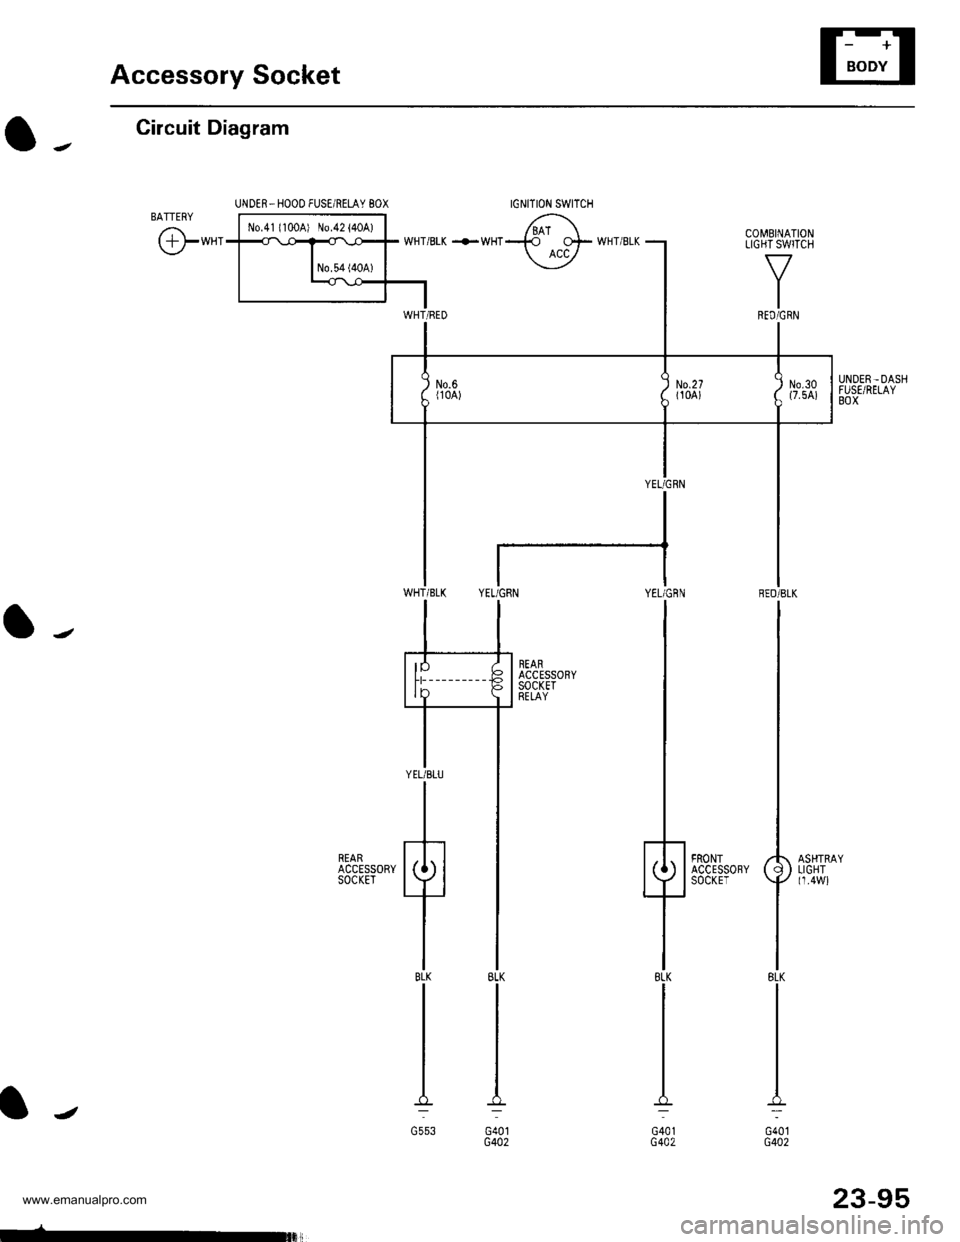 HONDA CR-V 2000 RD1-RD3 / 1.G Workshop Manual 
Accessory Socket
IGNITION SWITCH
Circuit Diagram
UNDER_HOOO FUSE/RELAY 8OX
o-.
l-
lJ
txt 
Fffi^-.rr-.rrl 6\
t-**1*fffiT wHTBrK +*HT-137F wHr BLK
| -*T]
UNDER-DASHFUSE/RELAYBOX
YEL/GflN RED/BLK
lt
t